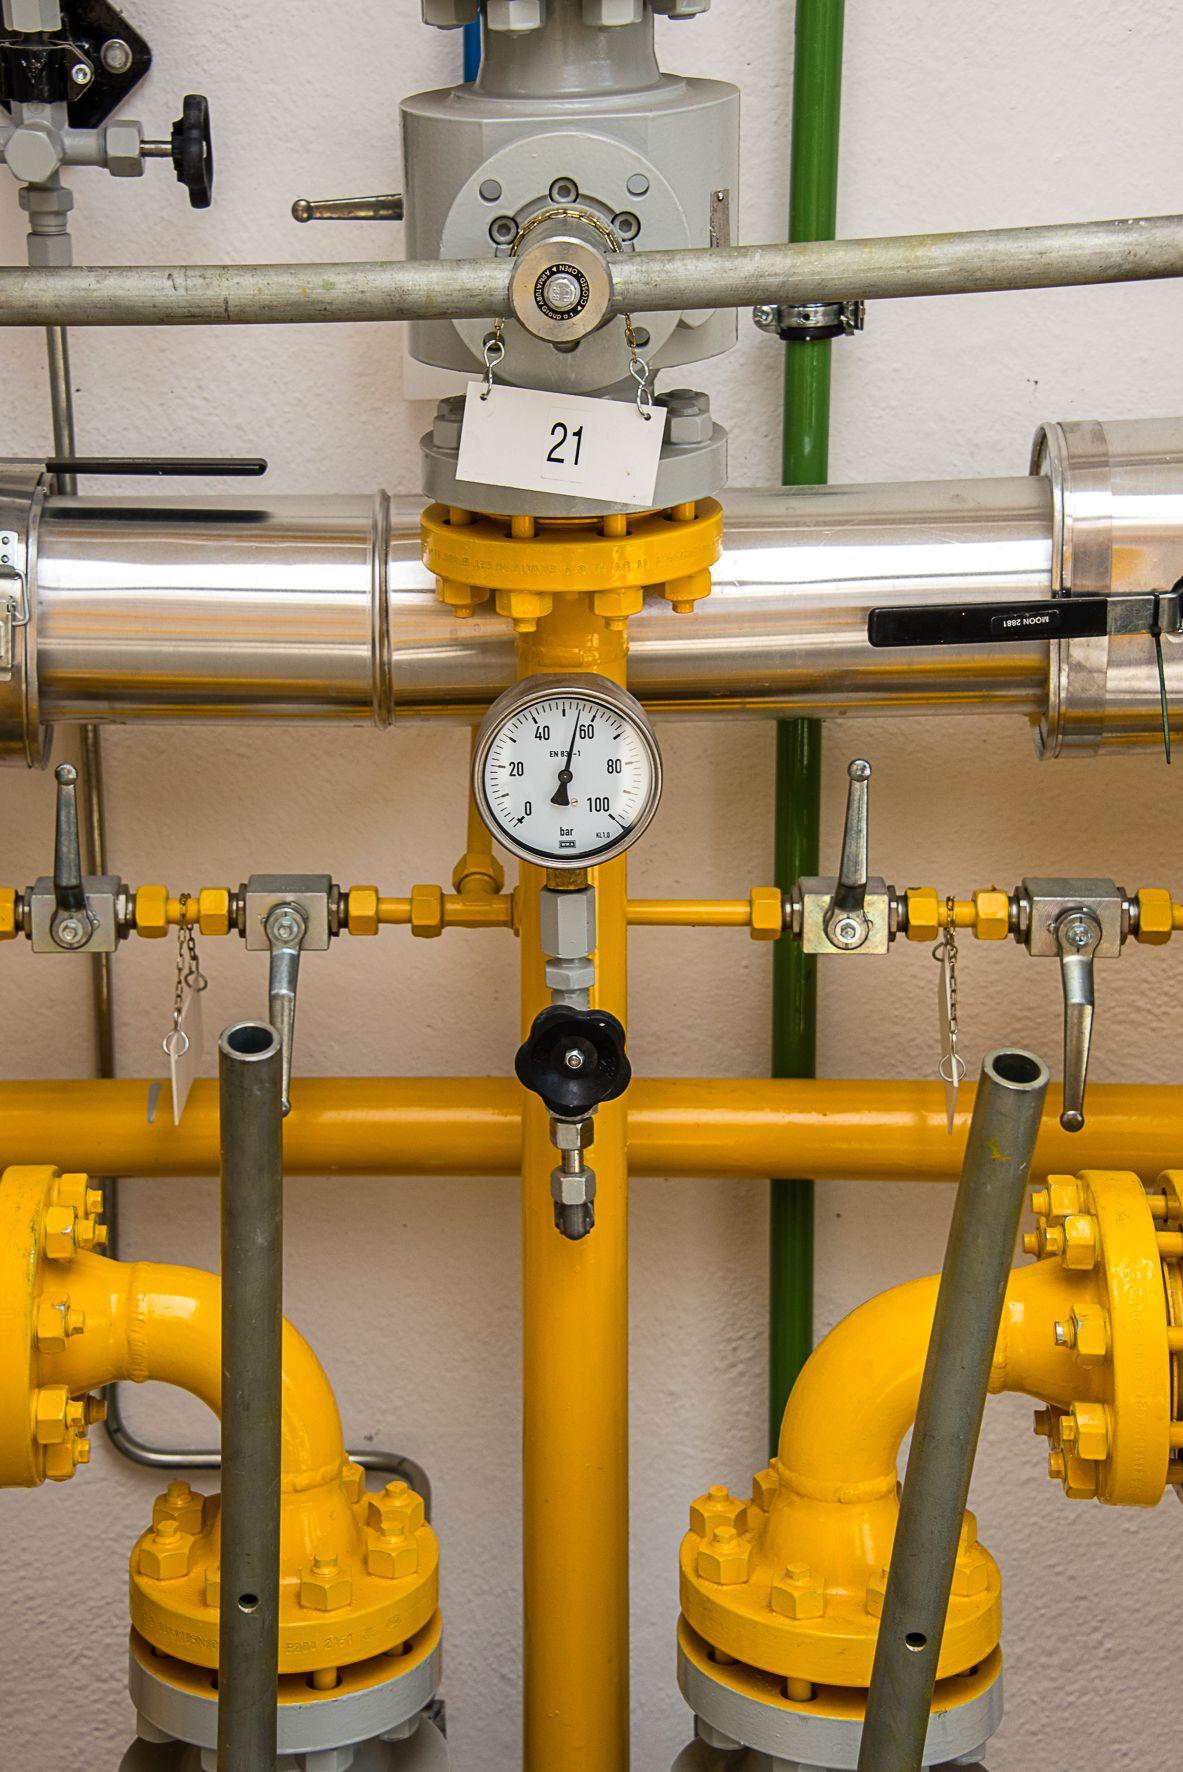 Gelbe Gasleitung mit einem Messgerät. Auf dem Messgerät sind die Zahlen 21, 40, 100 und 20 zu sehen